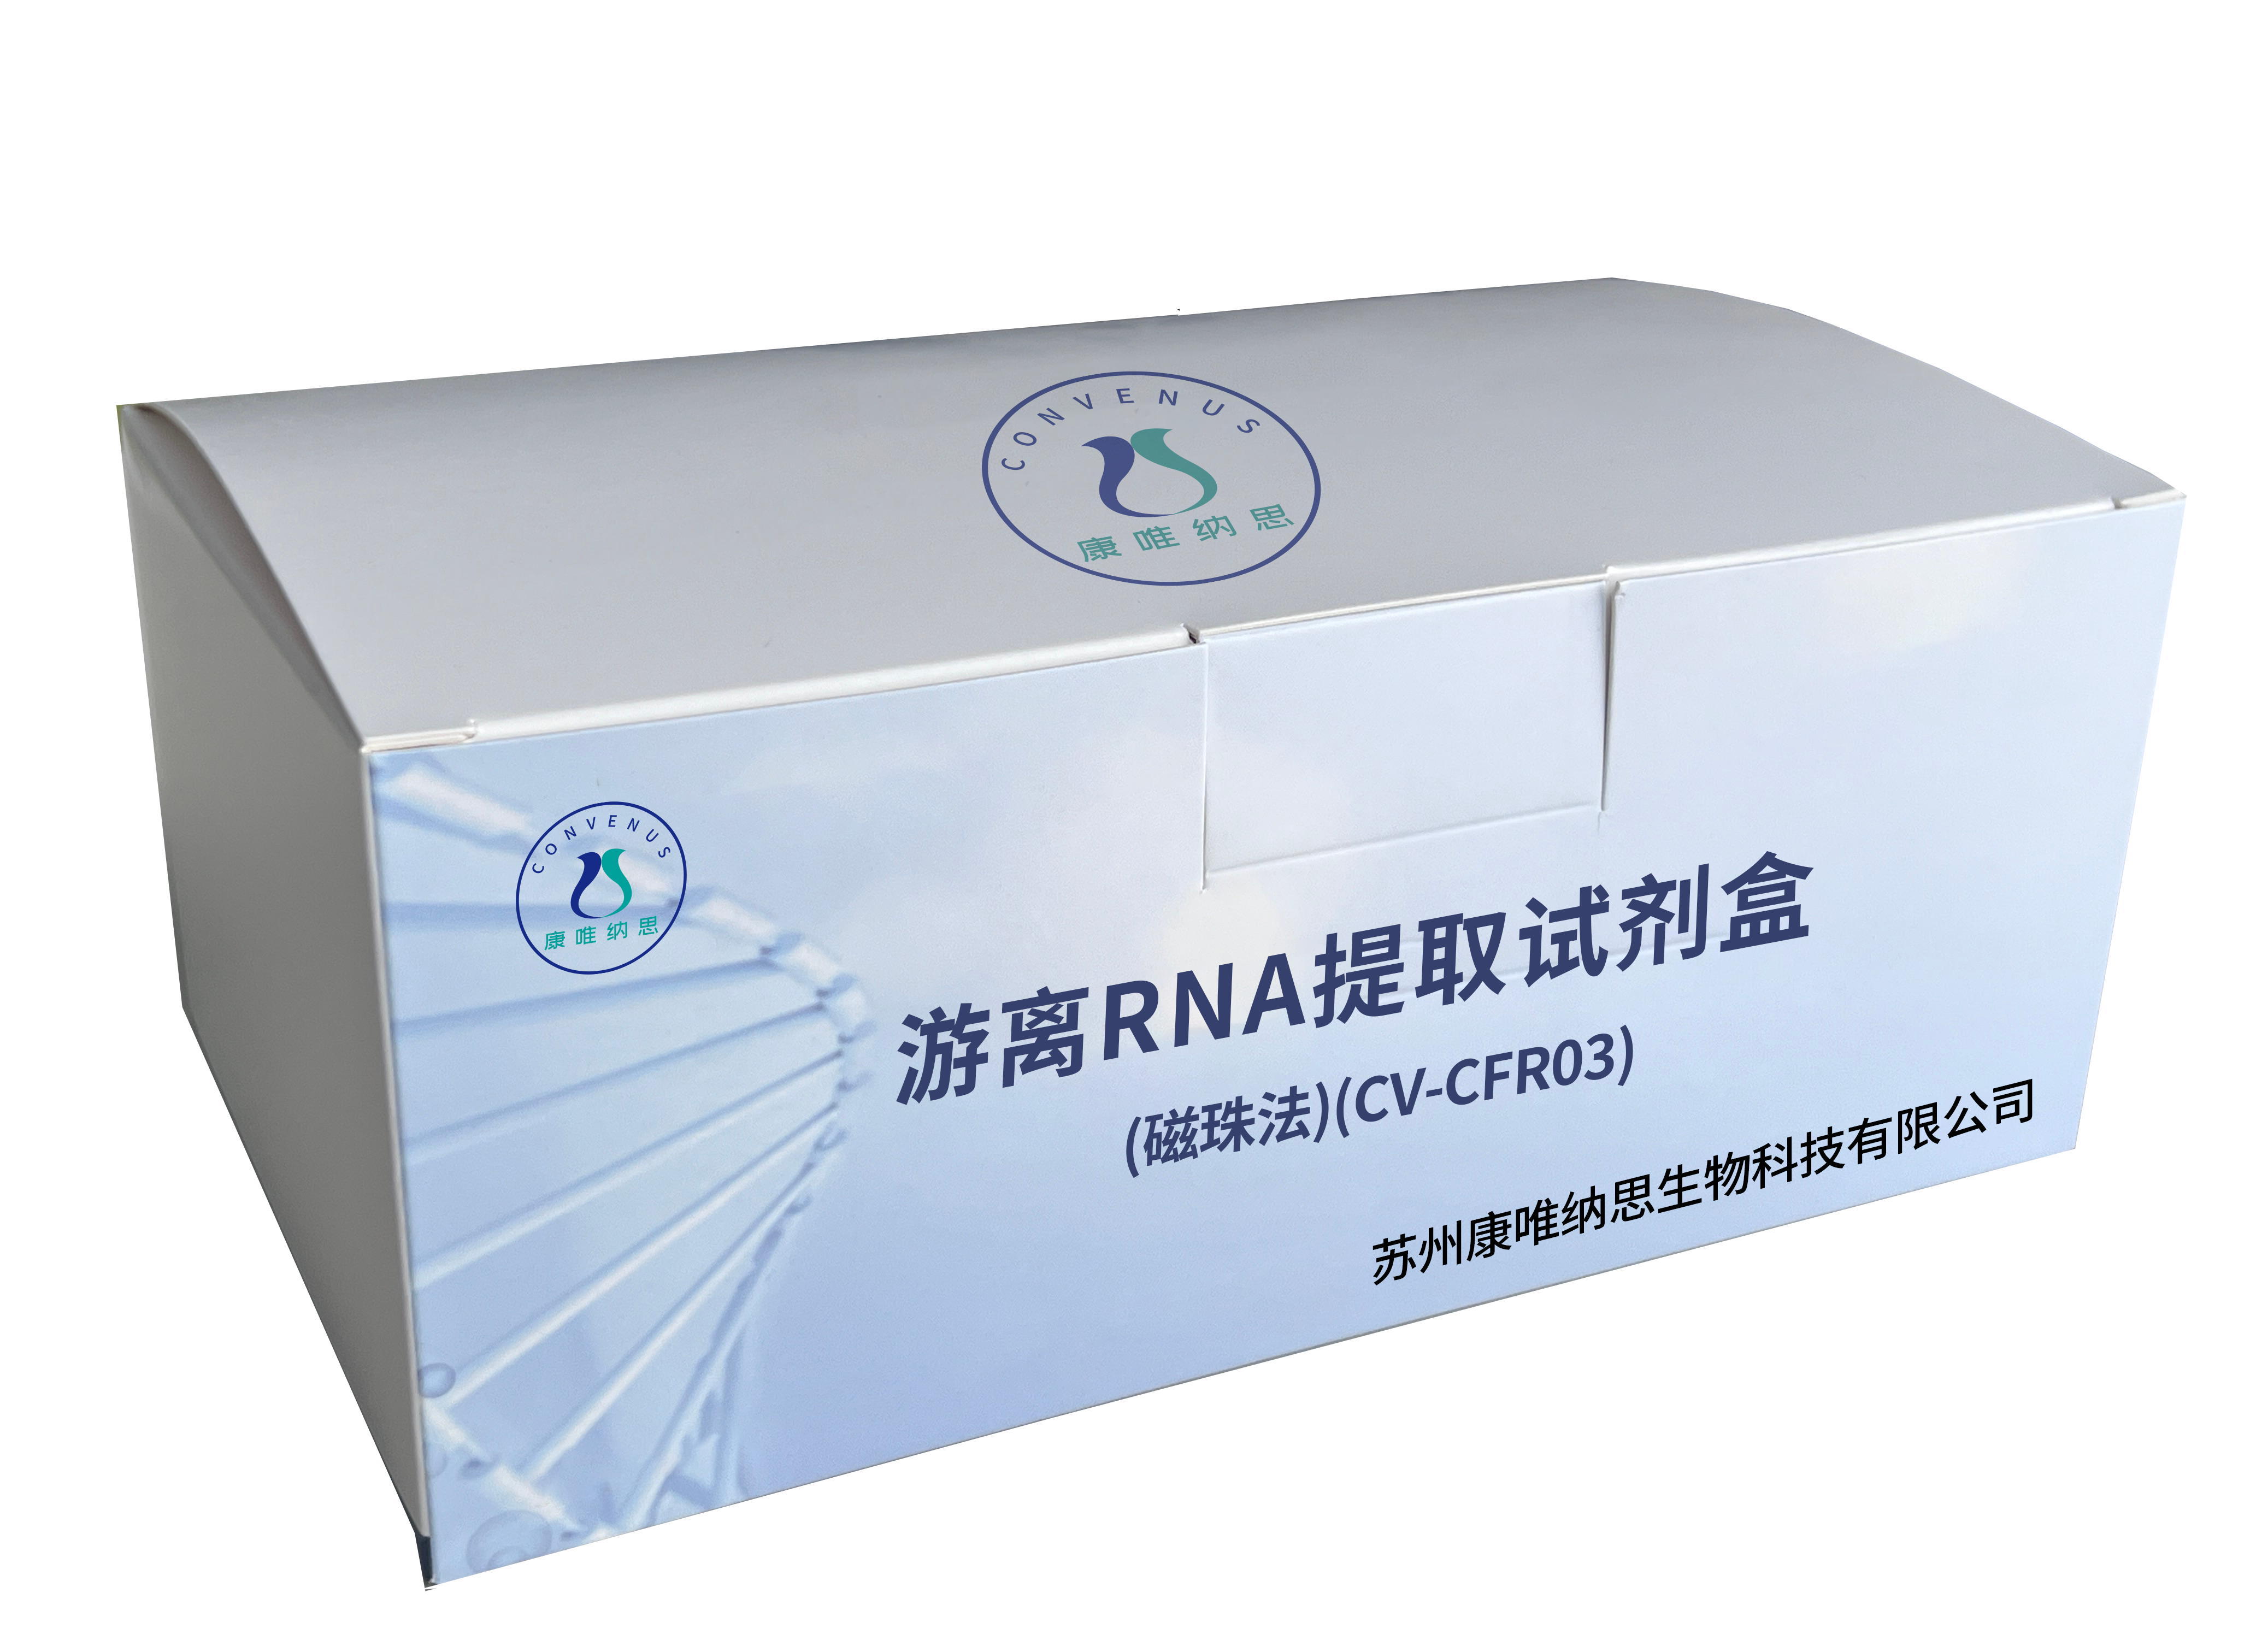 游离RNA提取试剂盒(磁珠法)(CV-CFR03)